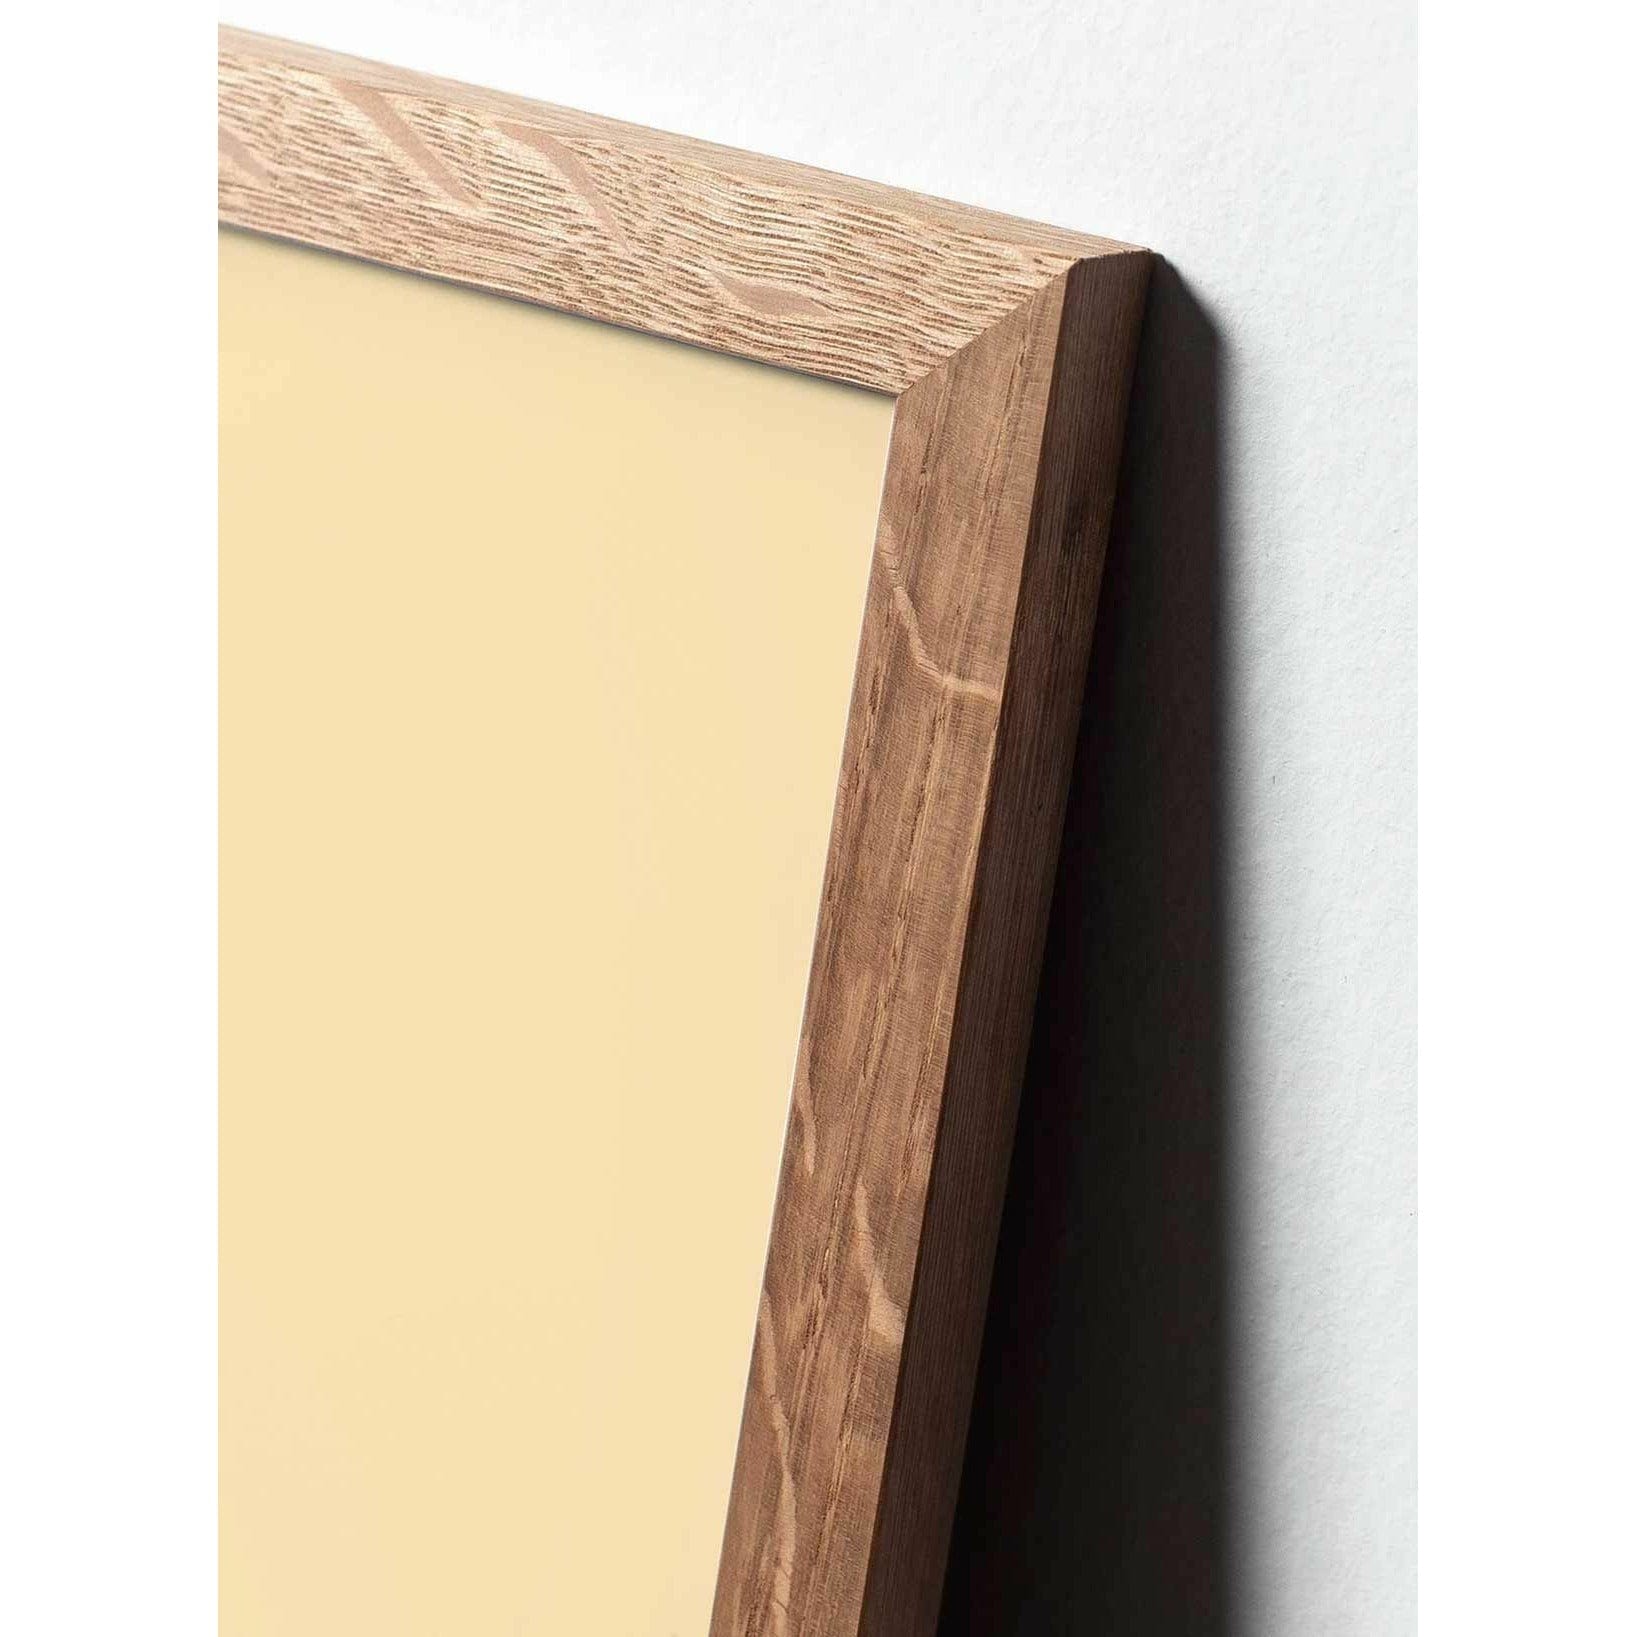 Poster classico di cono di pino da un'idea, cornice in legno chiaro 70x100 cm, sfondo colorato di sabbia